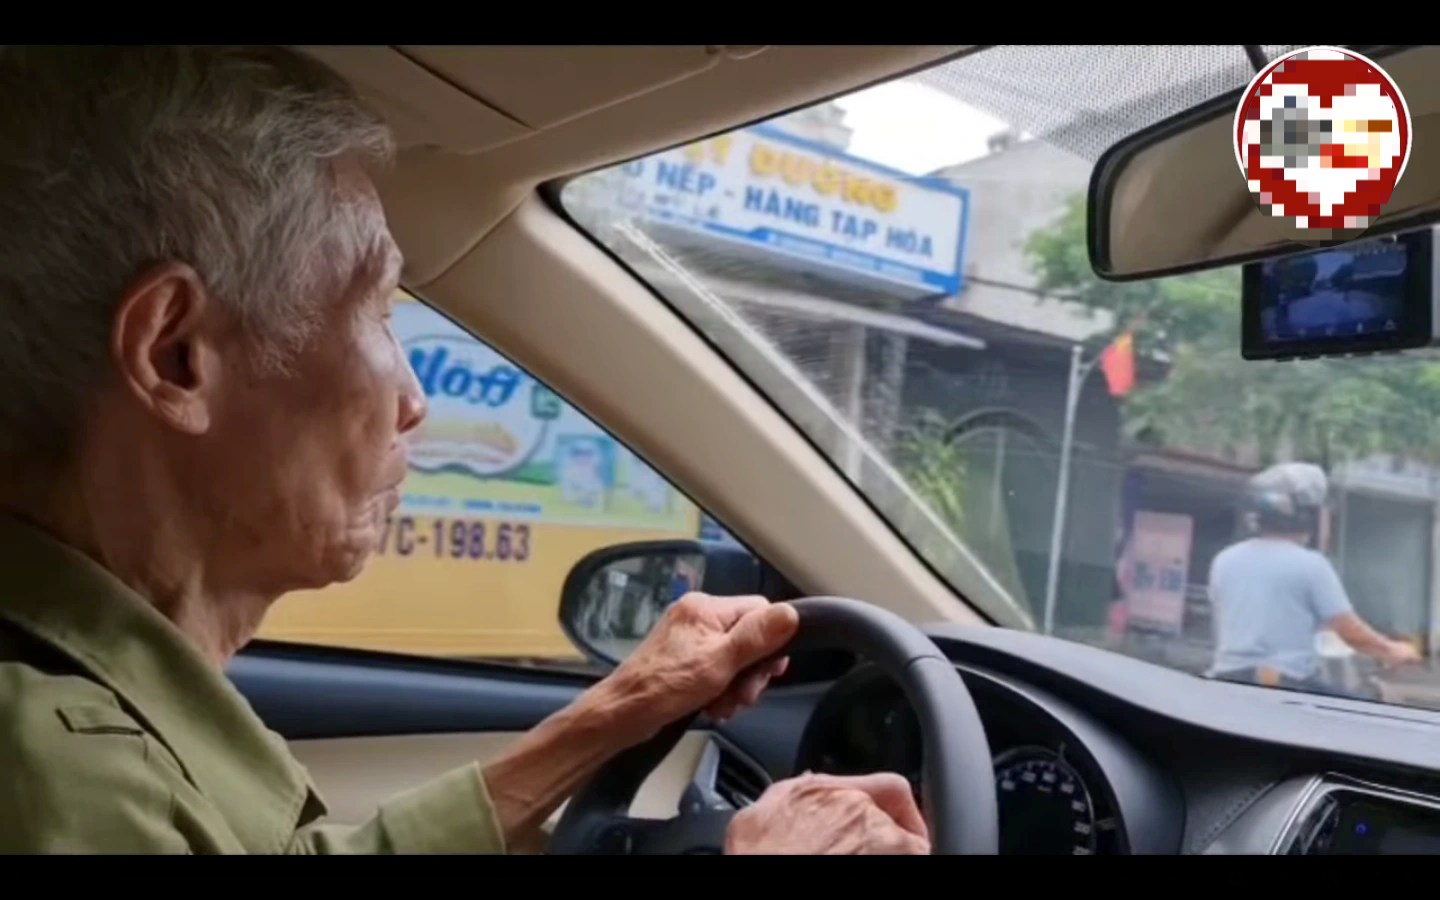 Cụ ông 83 tuổi lái ô tô bon bon trên đường, luật cho phép hay không? - 2